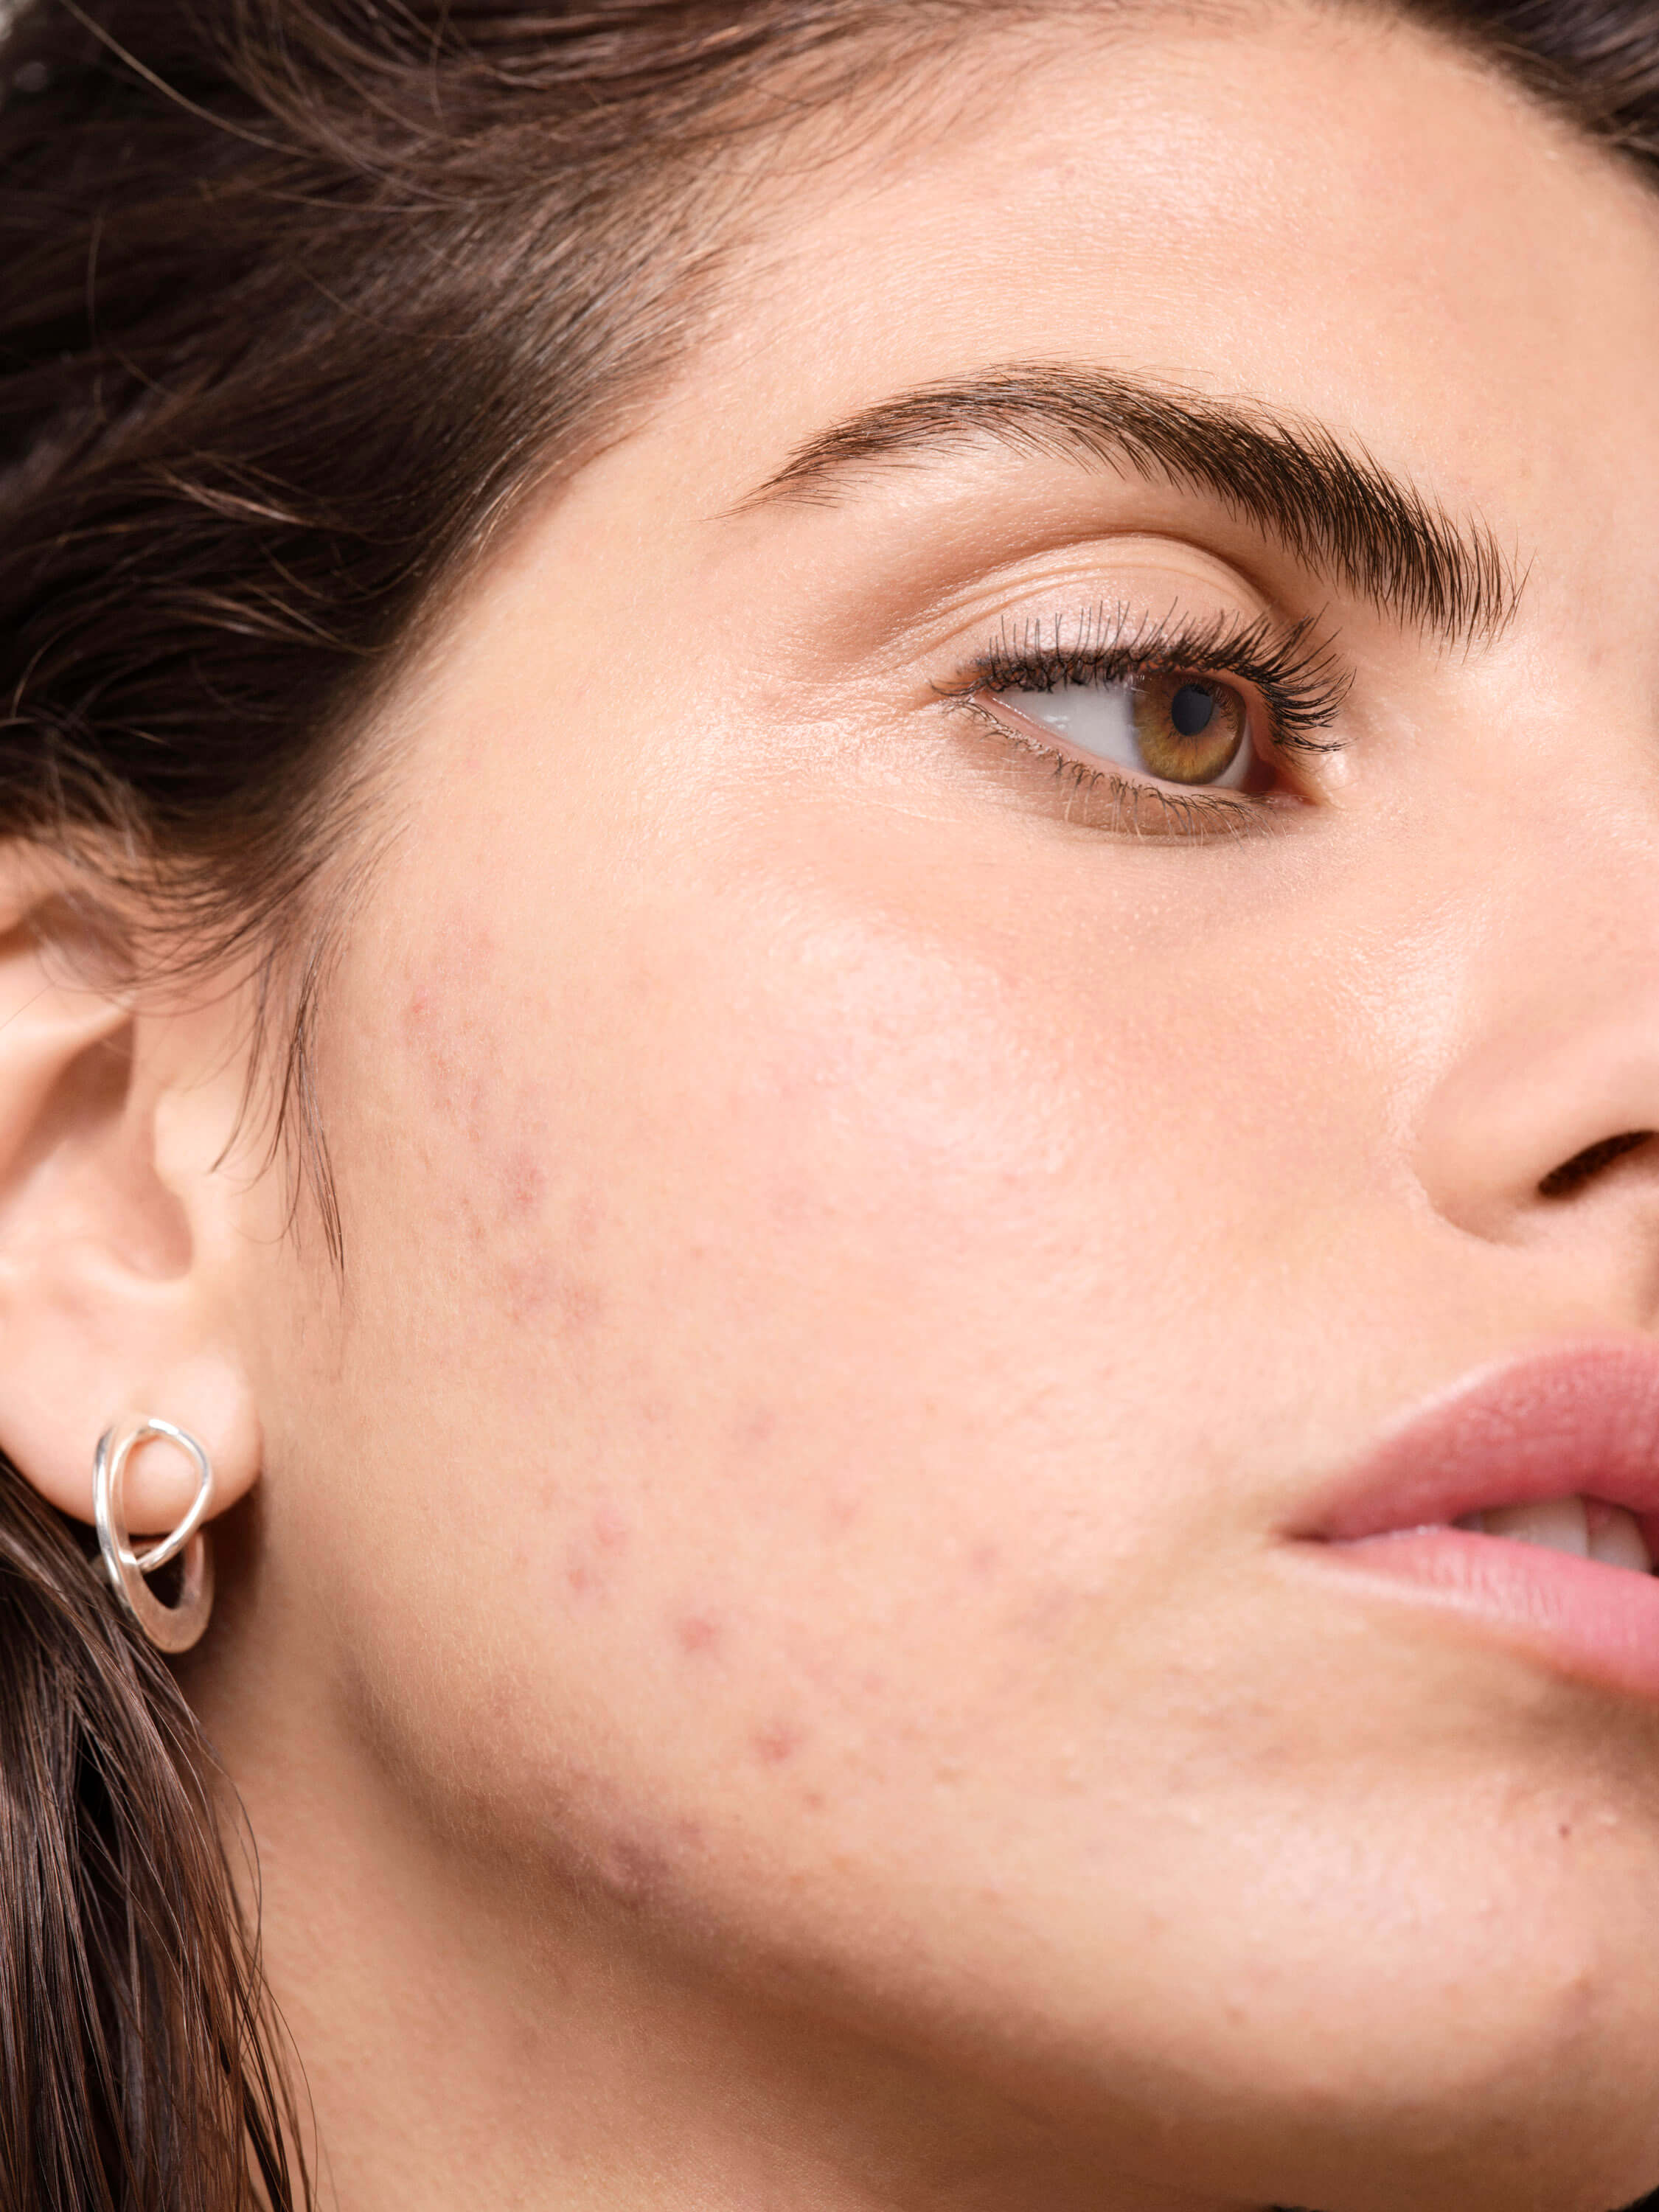 Existe-t-il-un-lien-entre-les-produits-laitiers-et-l'acné